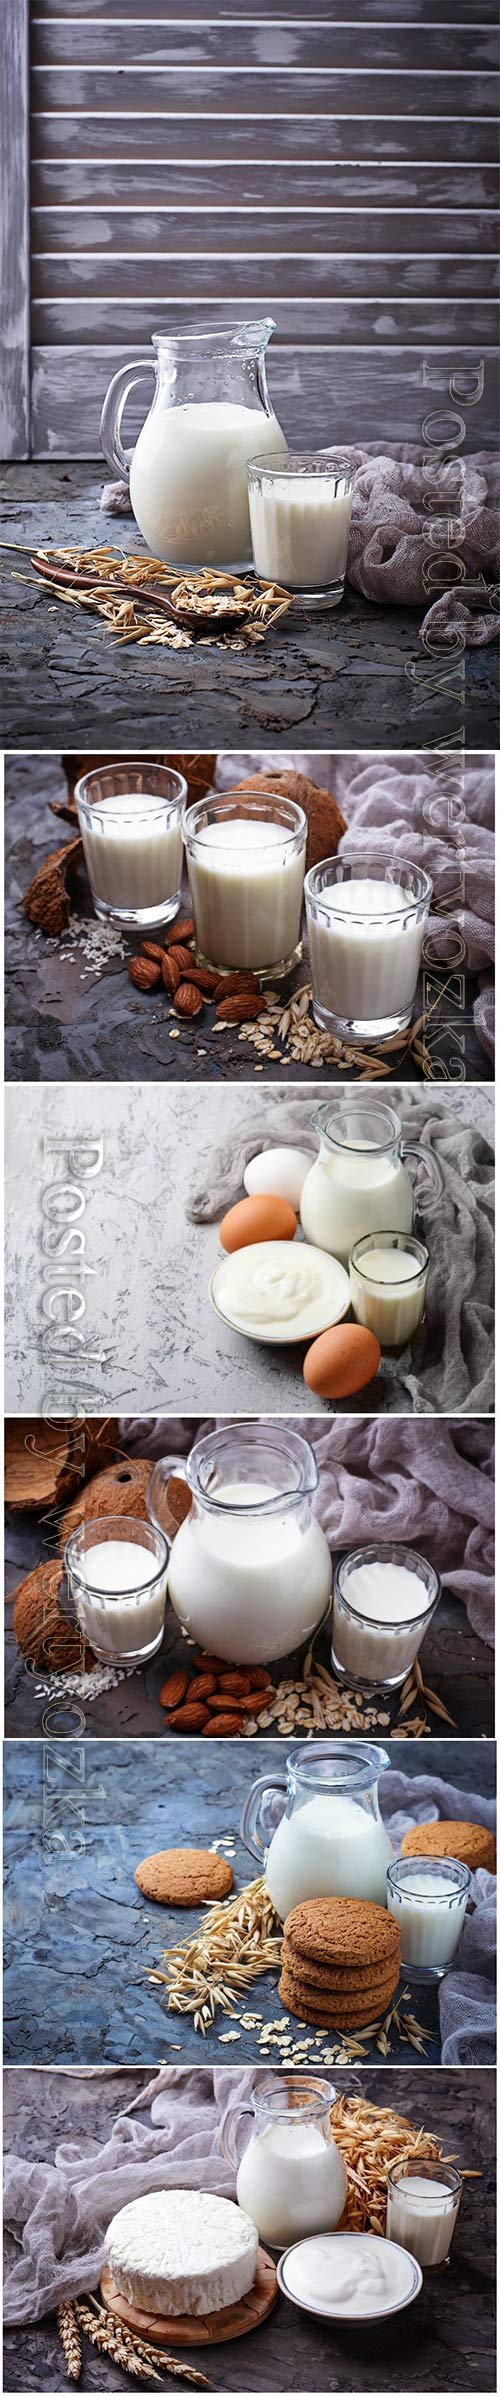 Milk, sour cream and eggs